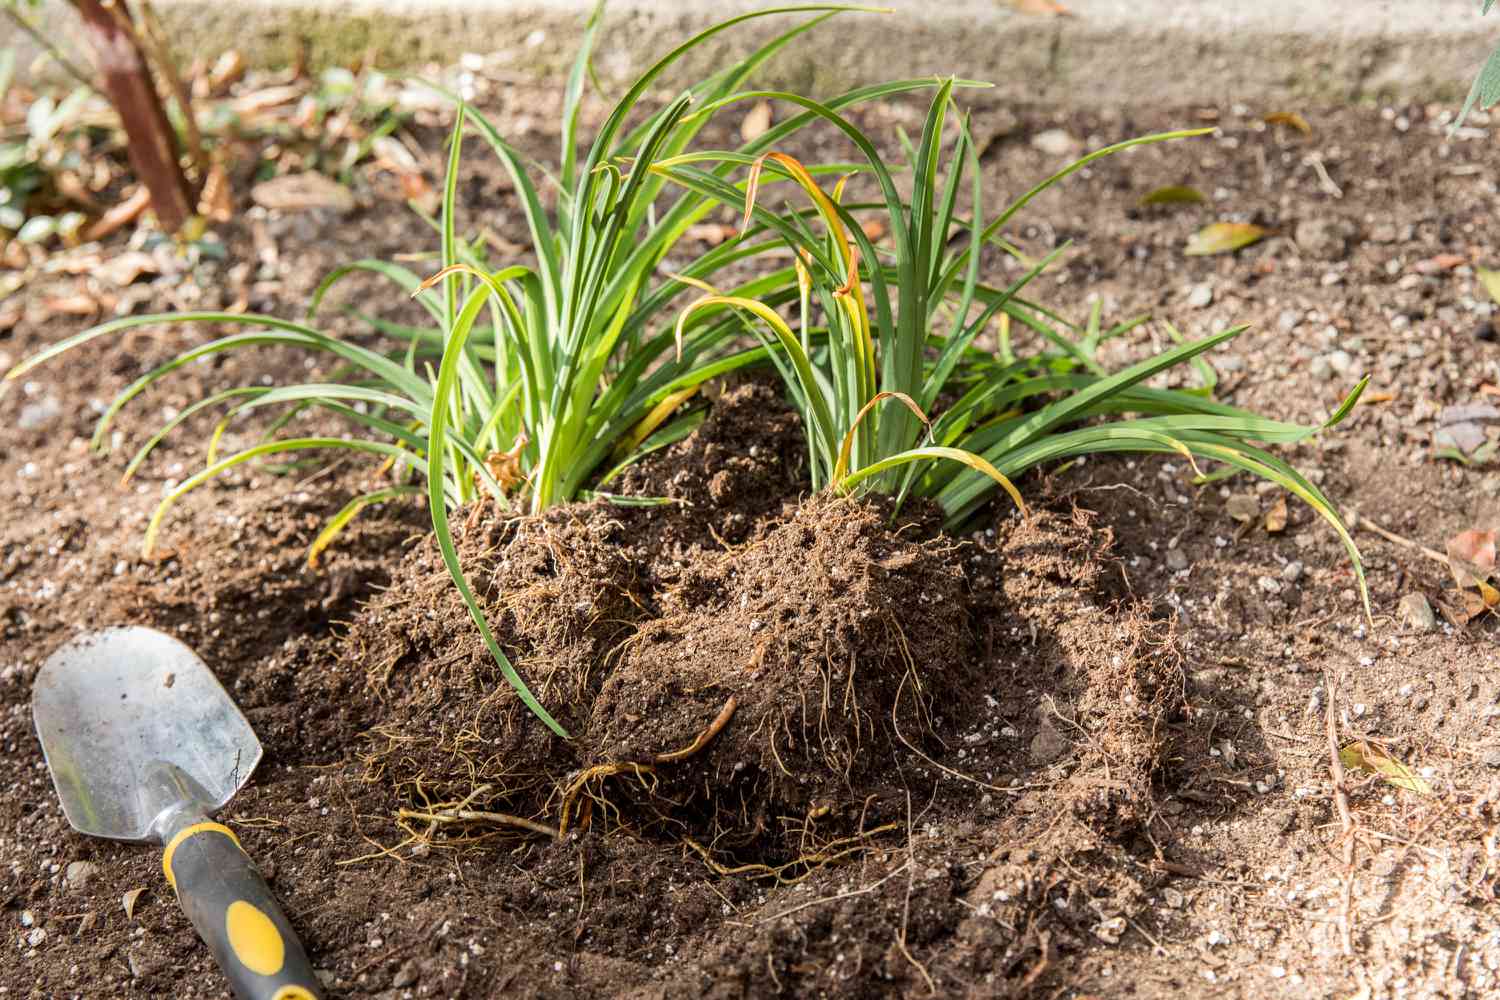 Taglilien geteilt auf der Erde neben der Handschaufel zum Umpflanzen